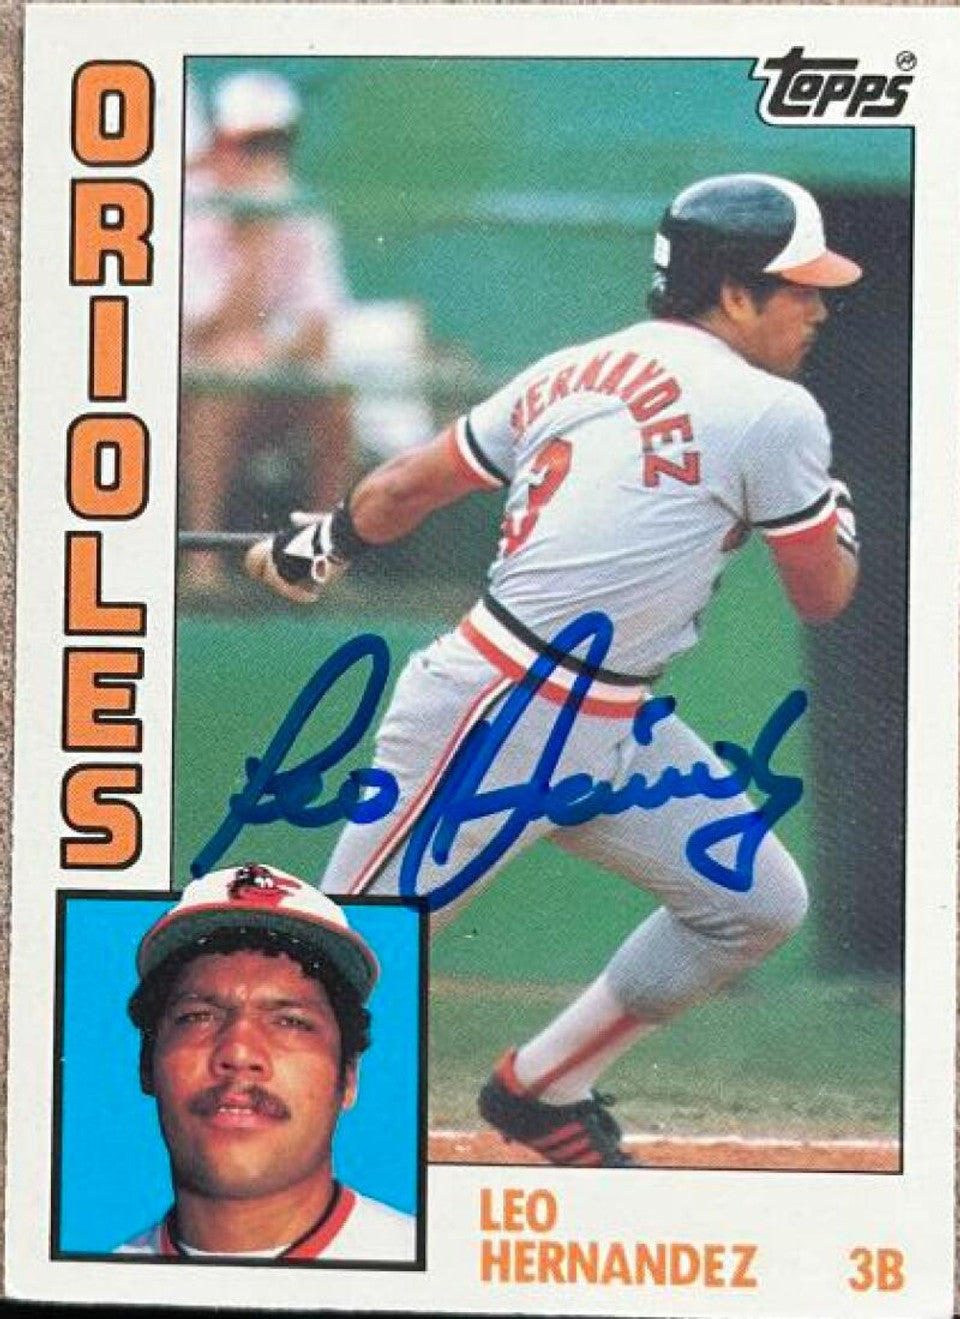 レオ・ヘルナンデス、1984 トップス ティファニー ベースボール カードに署名 - ボルチモア オリオールズ